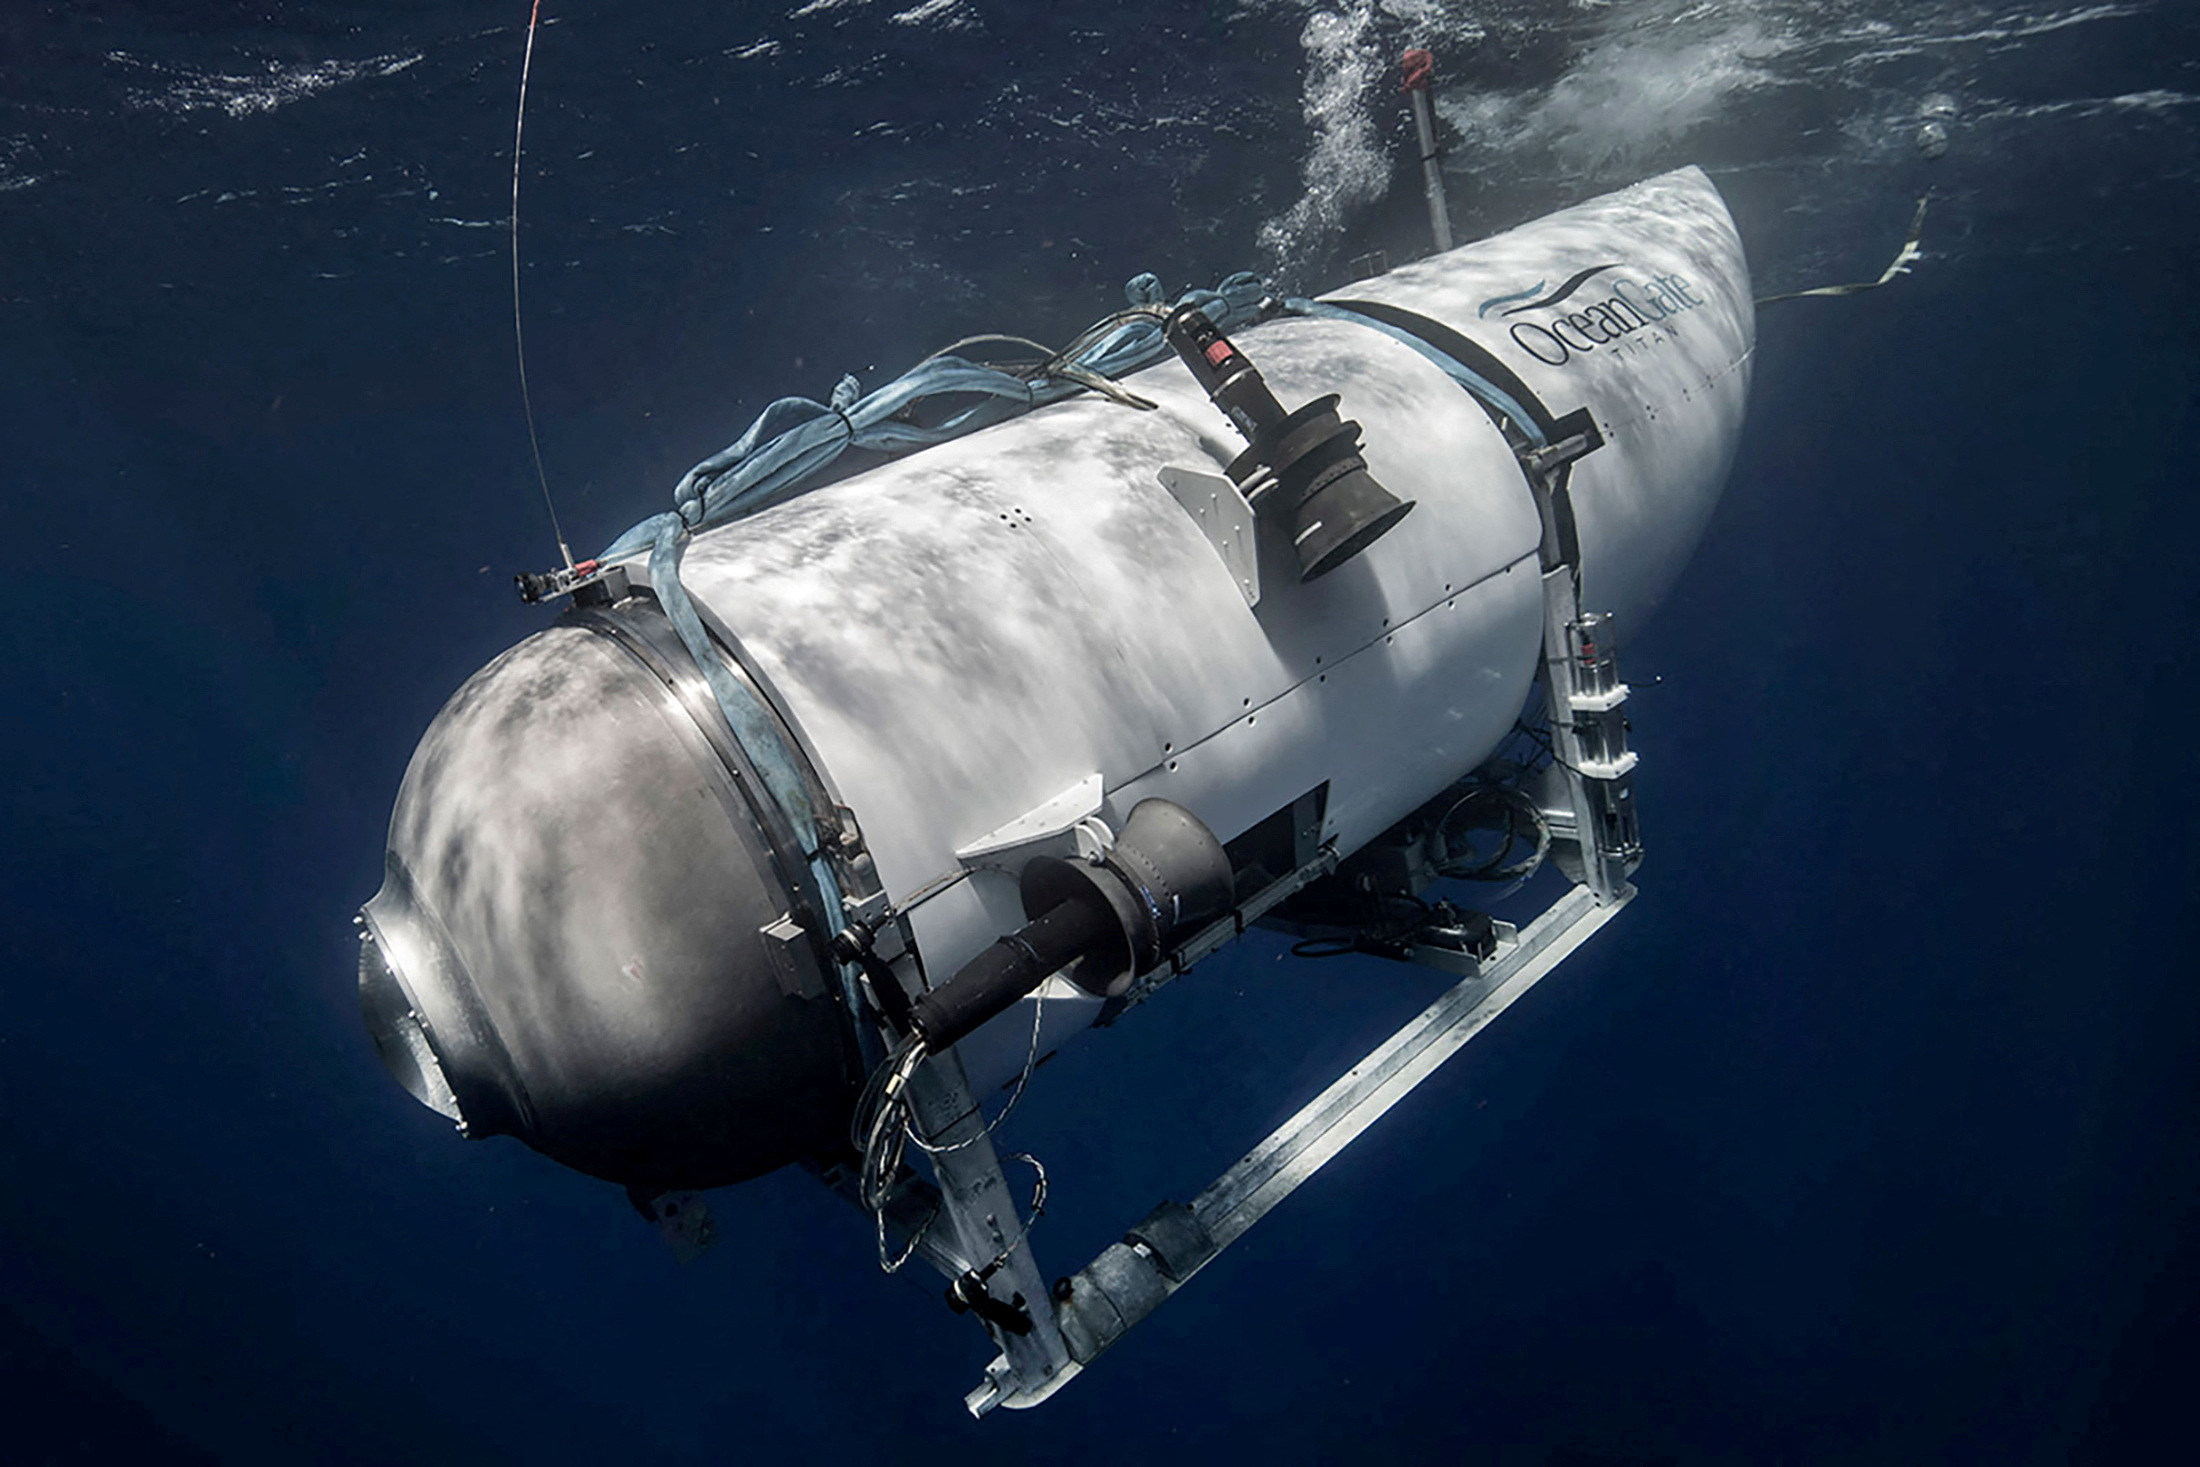 Τιτανικός: «Καιρός να σκεφτούμε αν πρέπει να σταματήσουν οι αποστολές» όπως αυτή του υποβρυχίου Titan